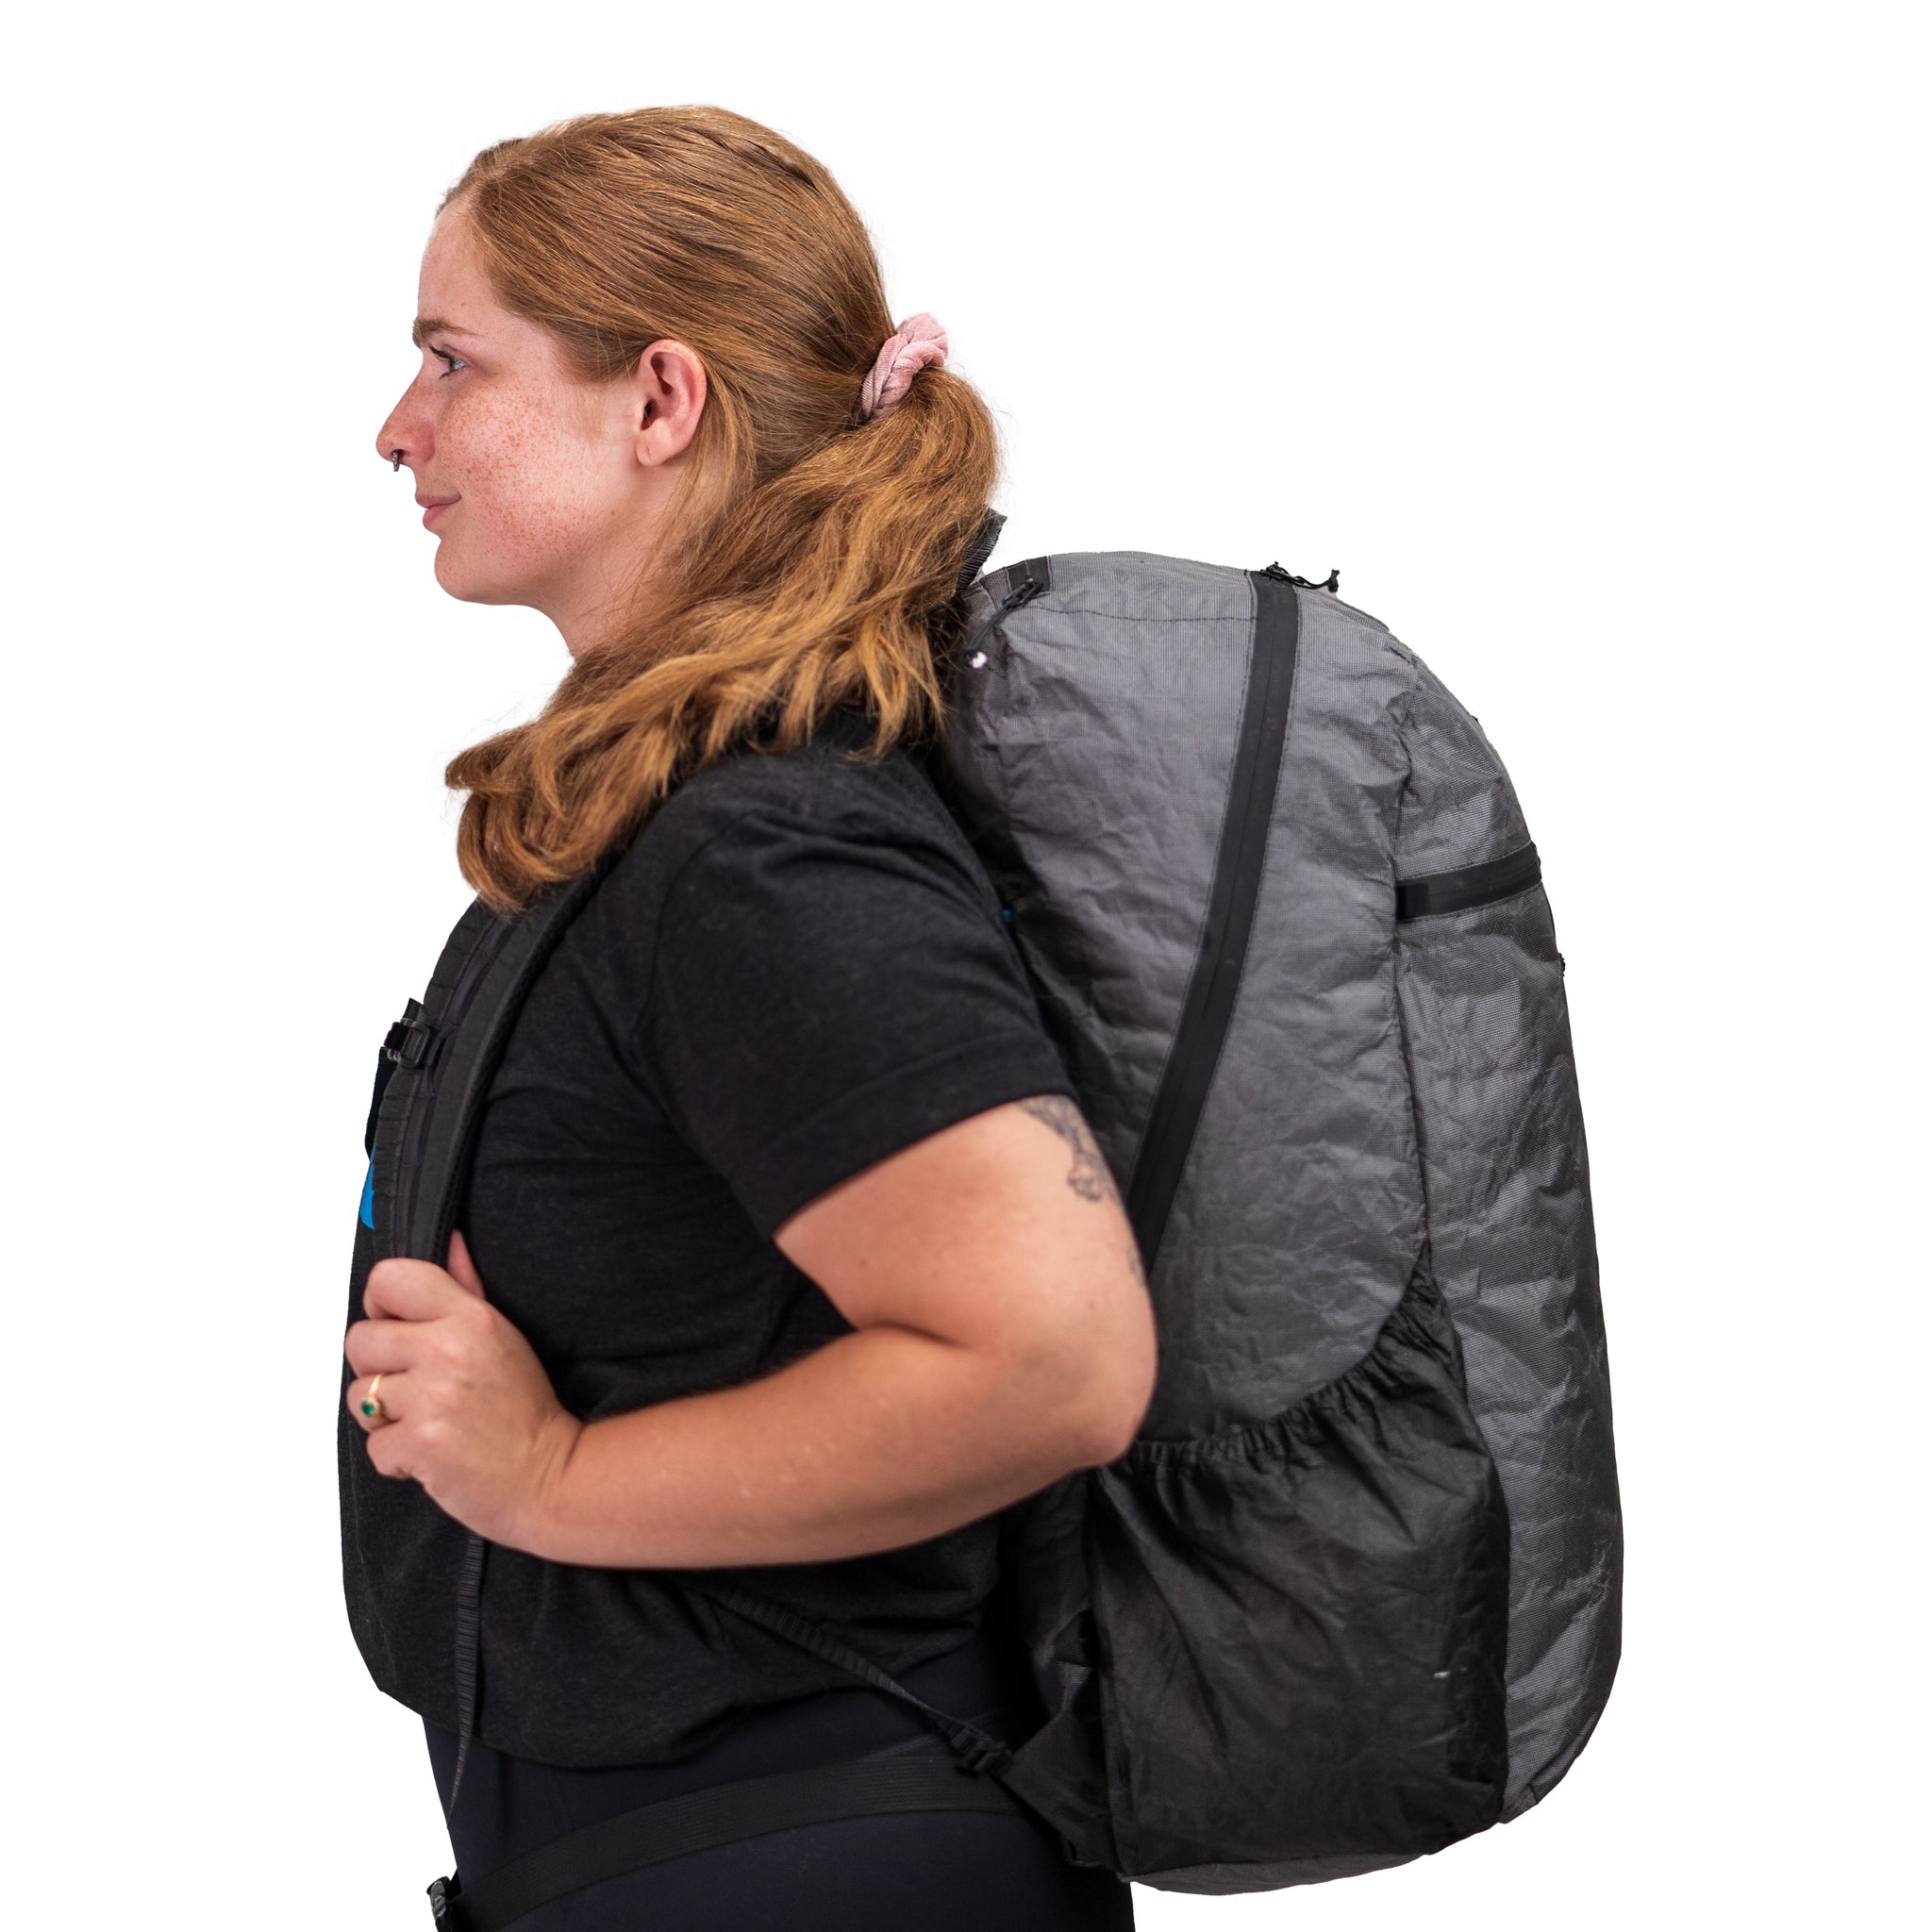 Bagger Ultra 40L Backpack - UL Frameless Backpack Zpacks